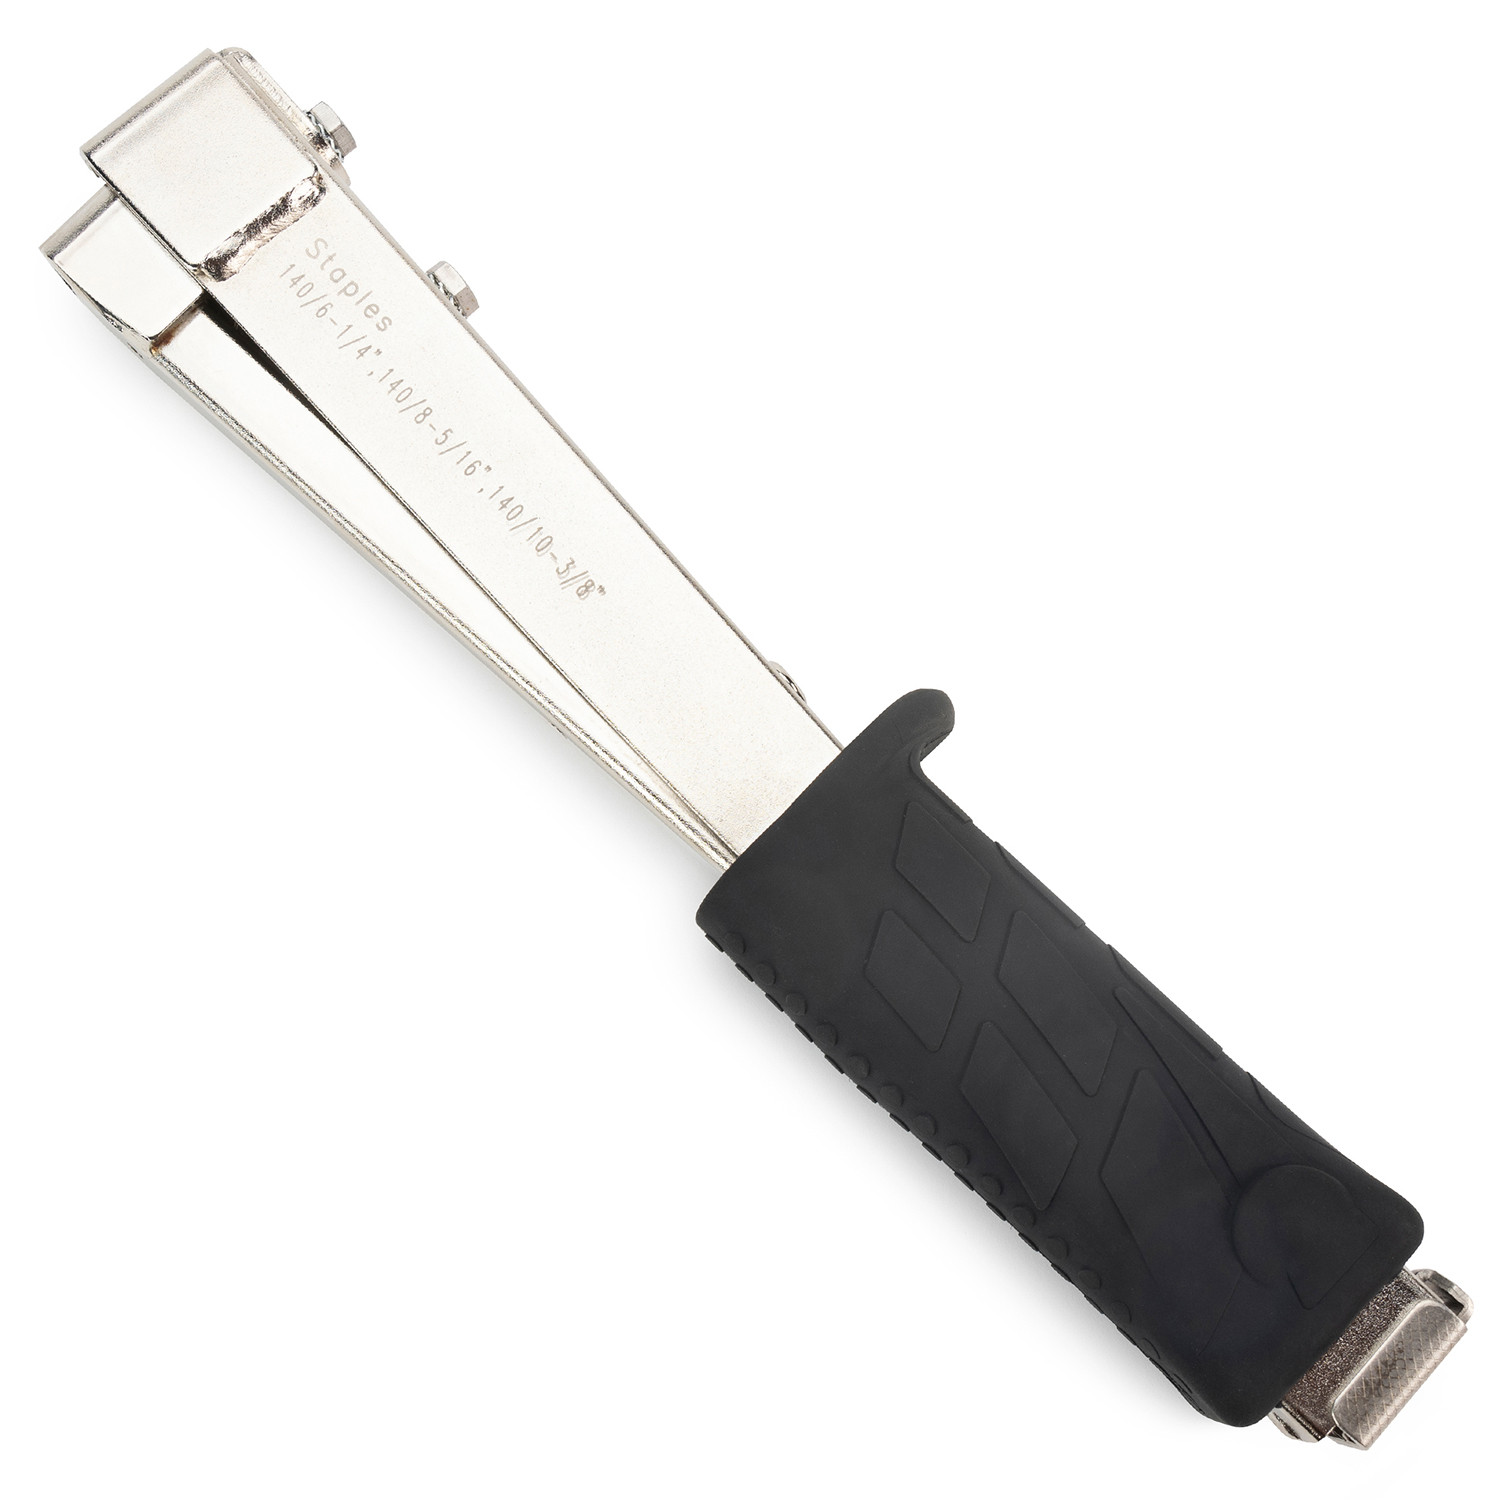 Idl Packaging HT-9-11 Heavy-Duty Hammer Tacker Stapler for 3/8 (10 mm) Crown Staples - Extra-Efficient Manual Hammer Stapler for Roofing